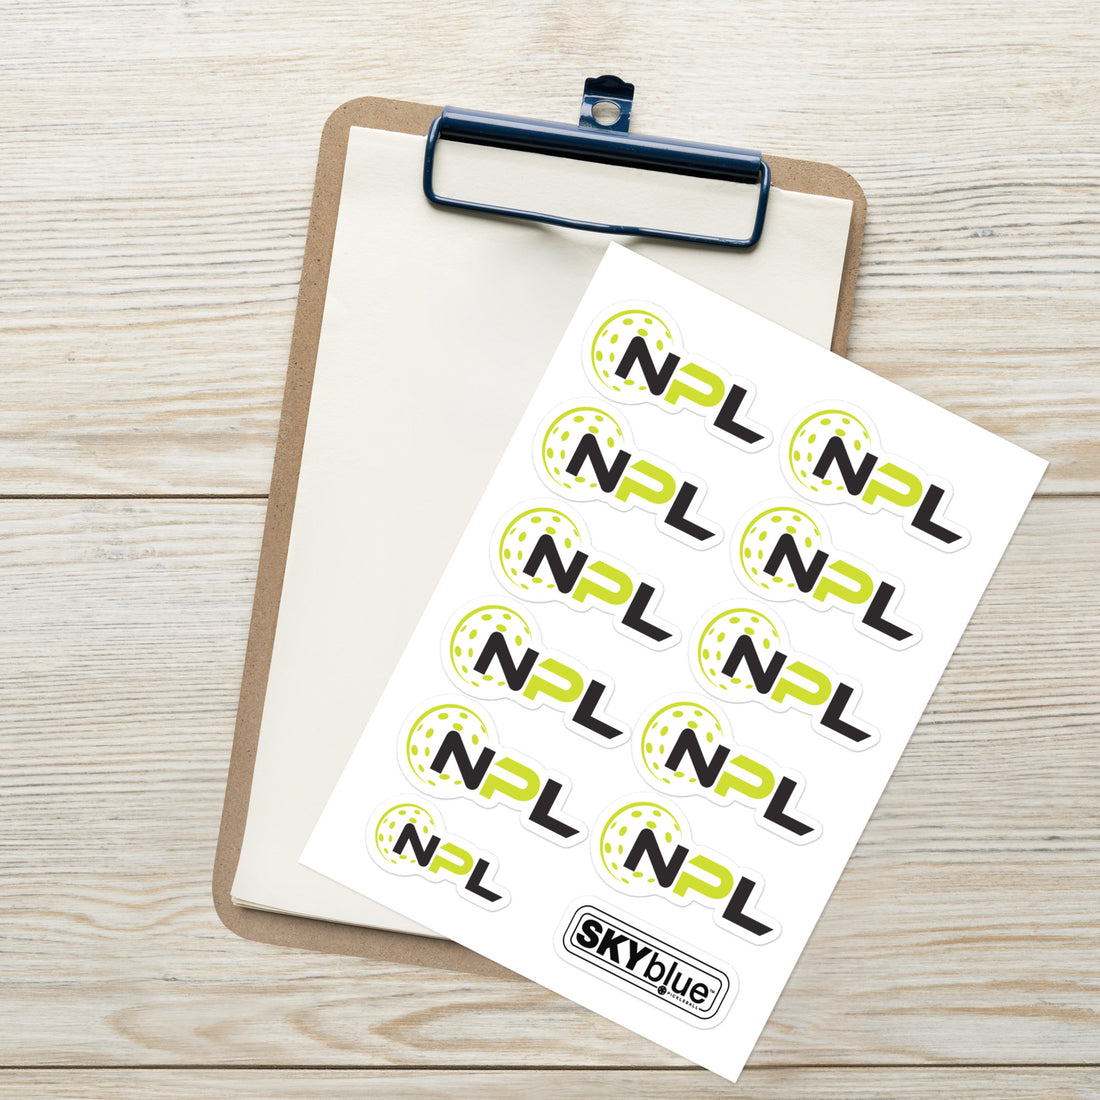 NPL™ ( National Pickleball League ) Sticker sheet